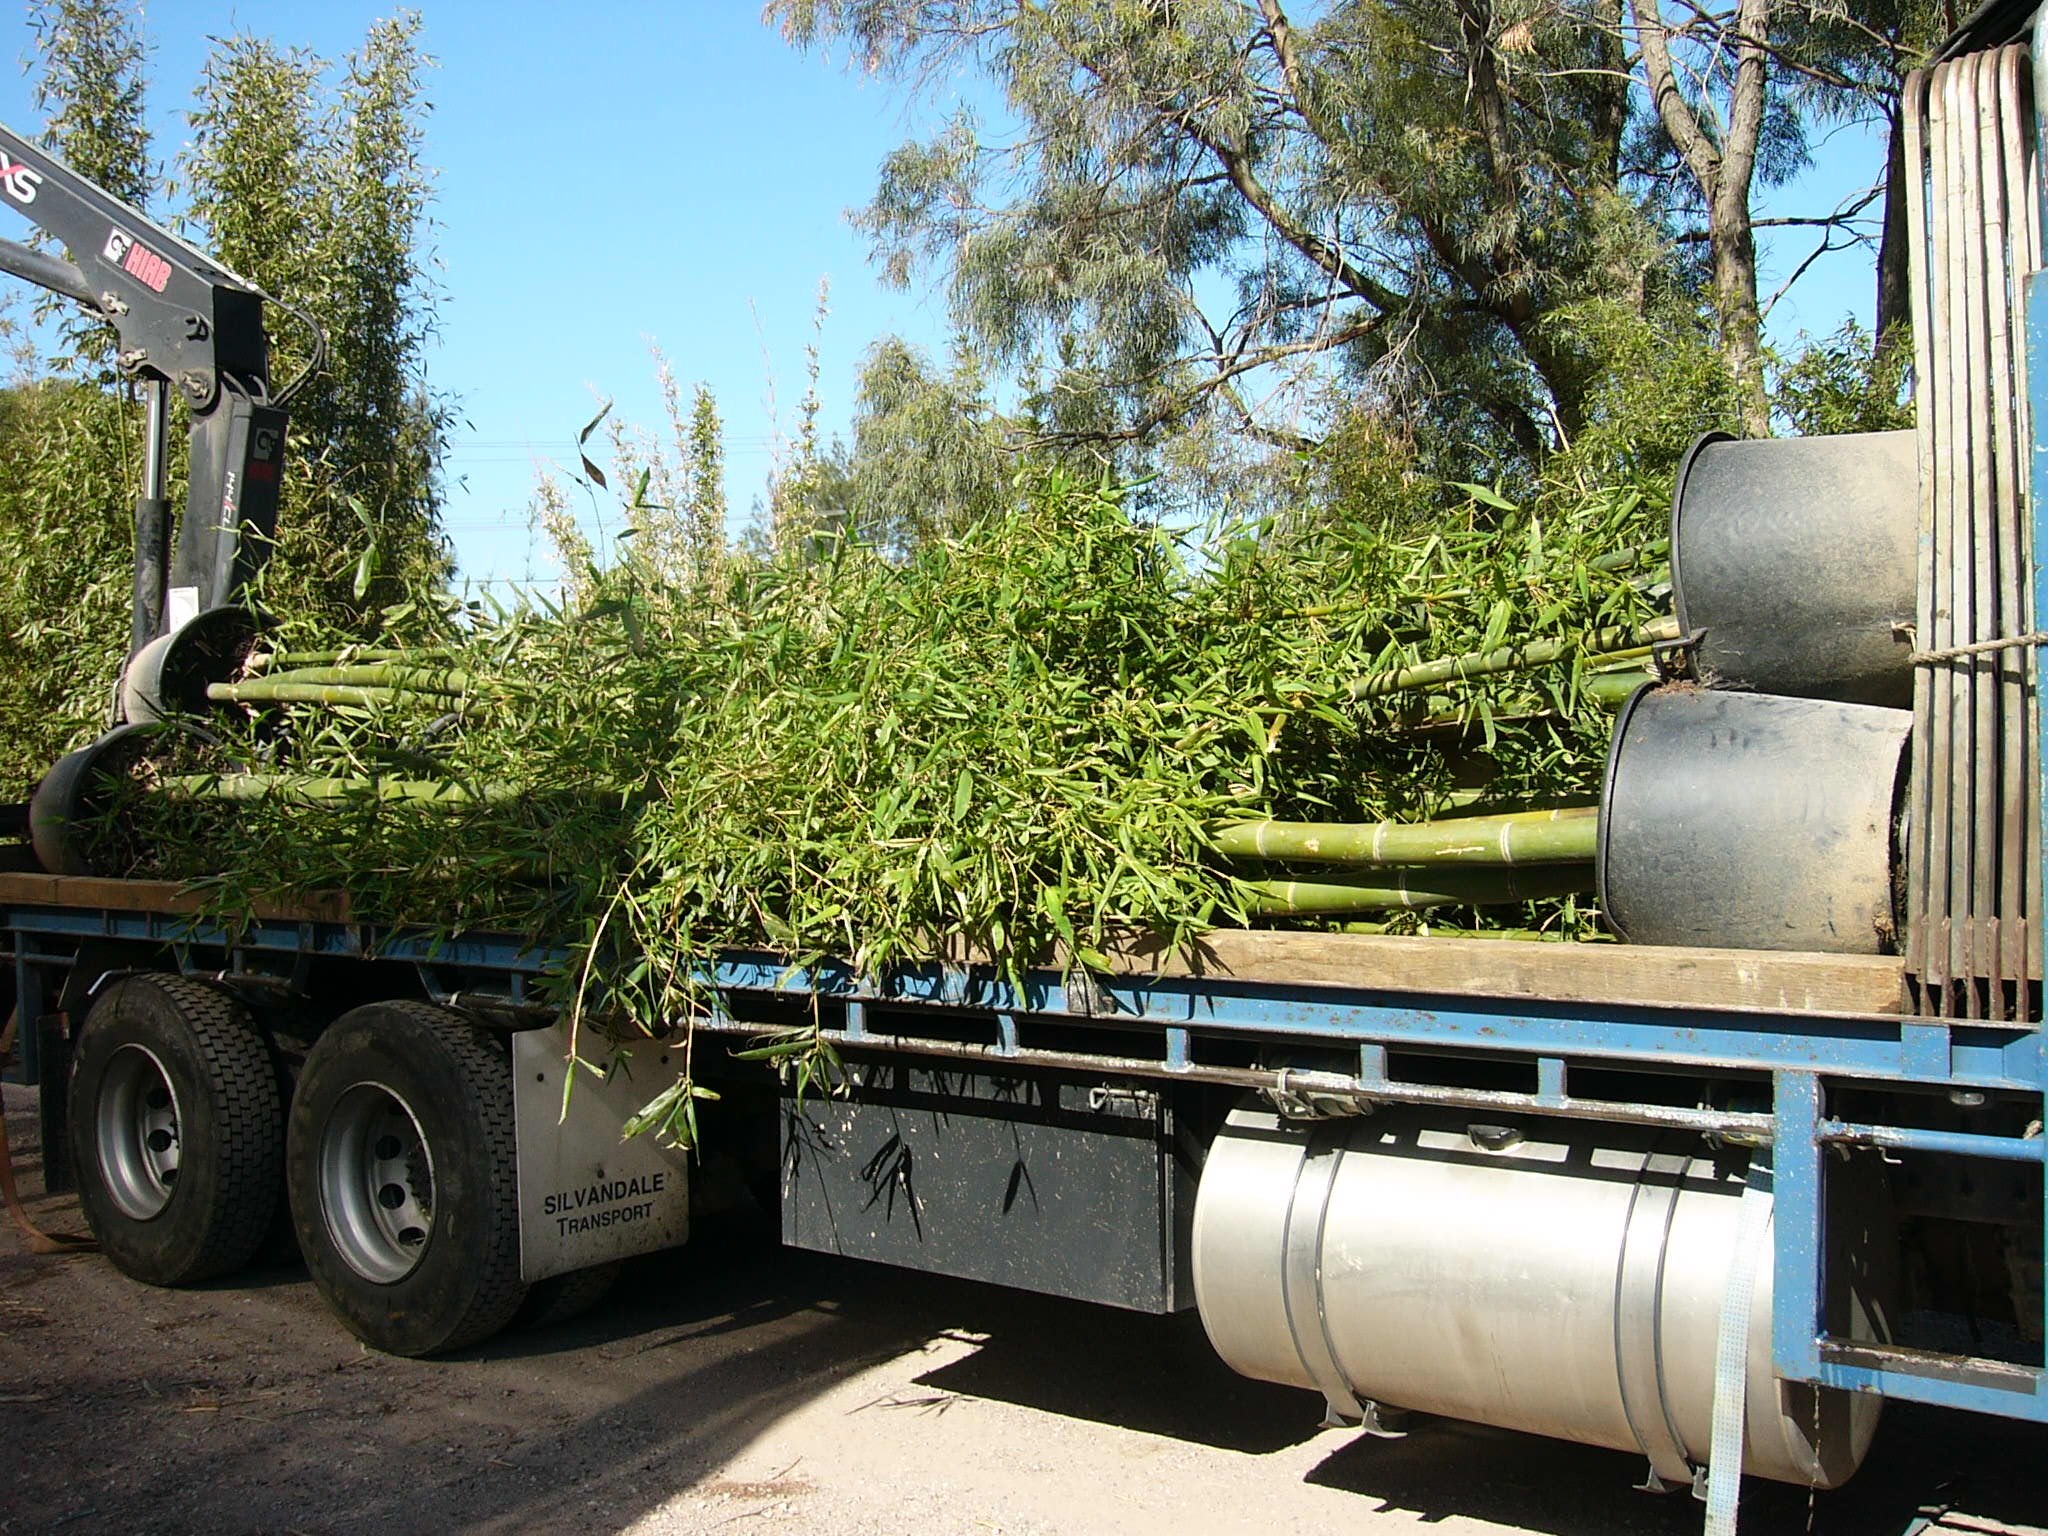 Large Oldhamii getting loaded for delivery...

#bamboo #melbourne #oldhamii #gardening #landscape #landscapedesign